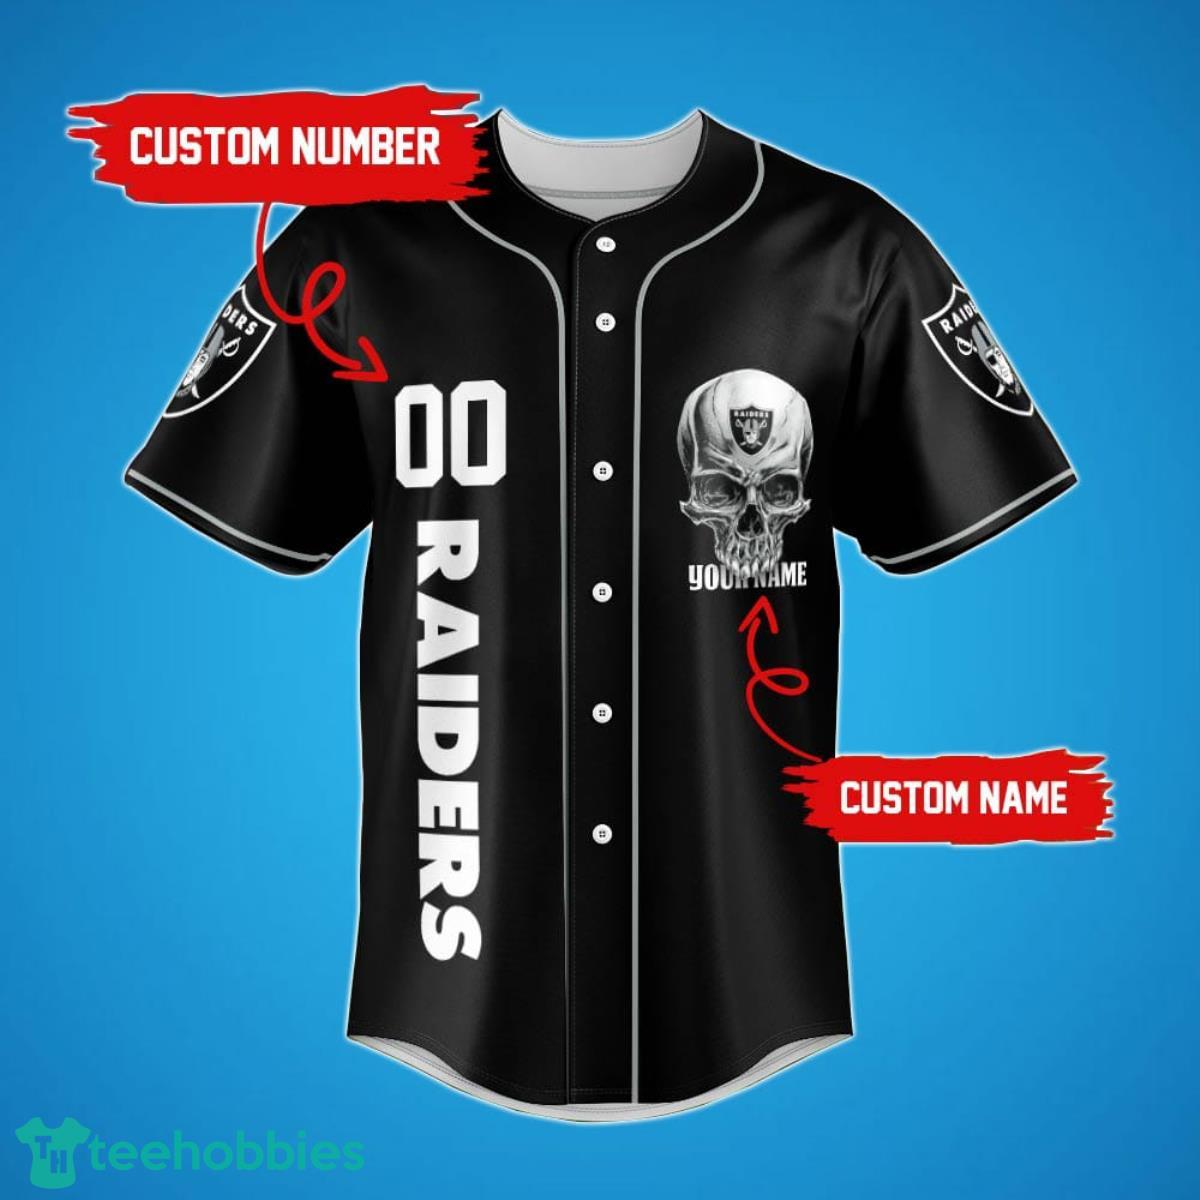 Las Vegas Raiders Damn Right Skull NFL Baseball Jersey Shirt Gift For Fans